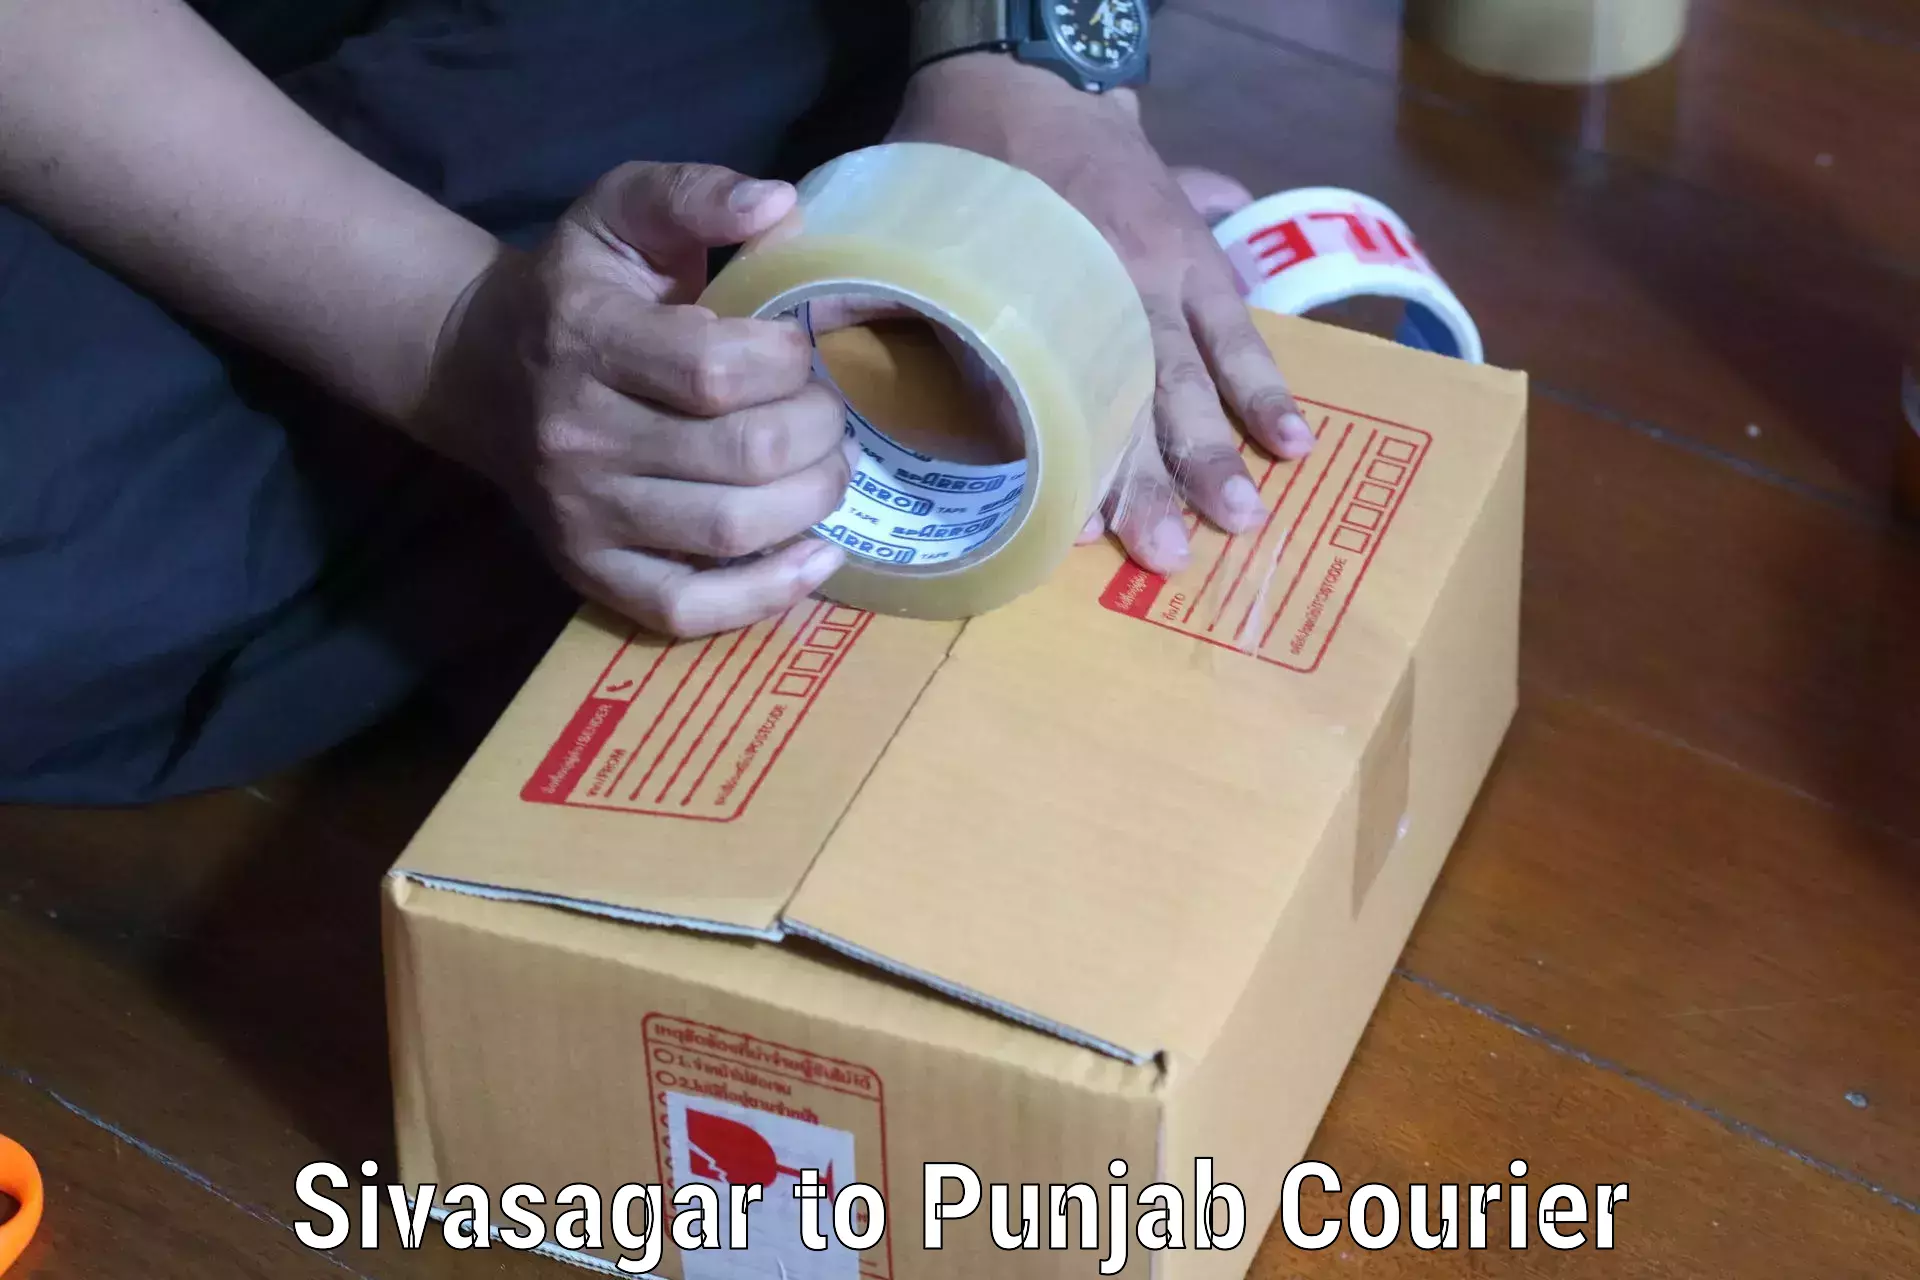 Ground shipping Sivasagar to Punjab